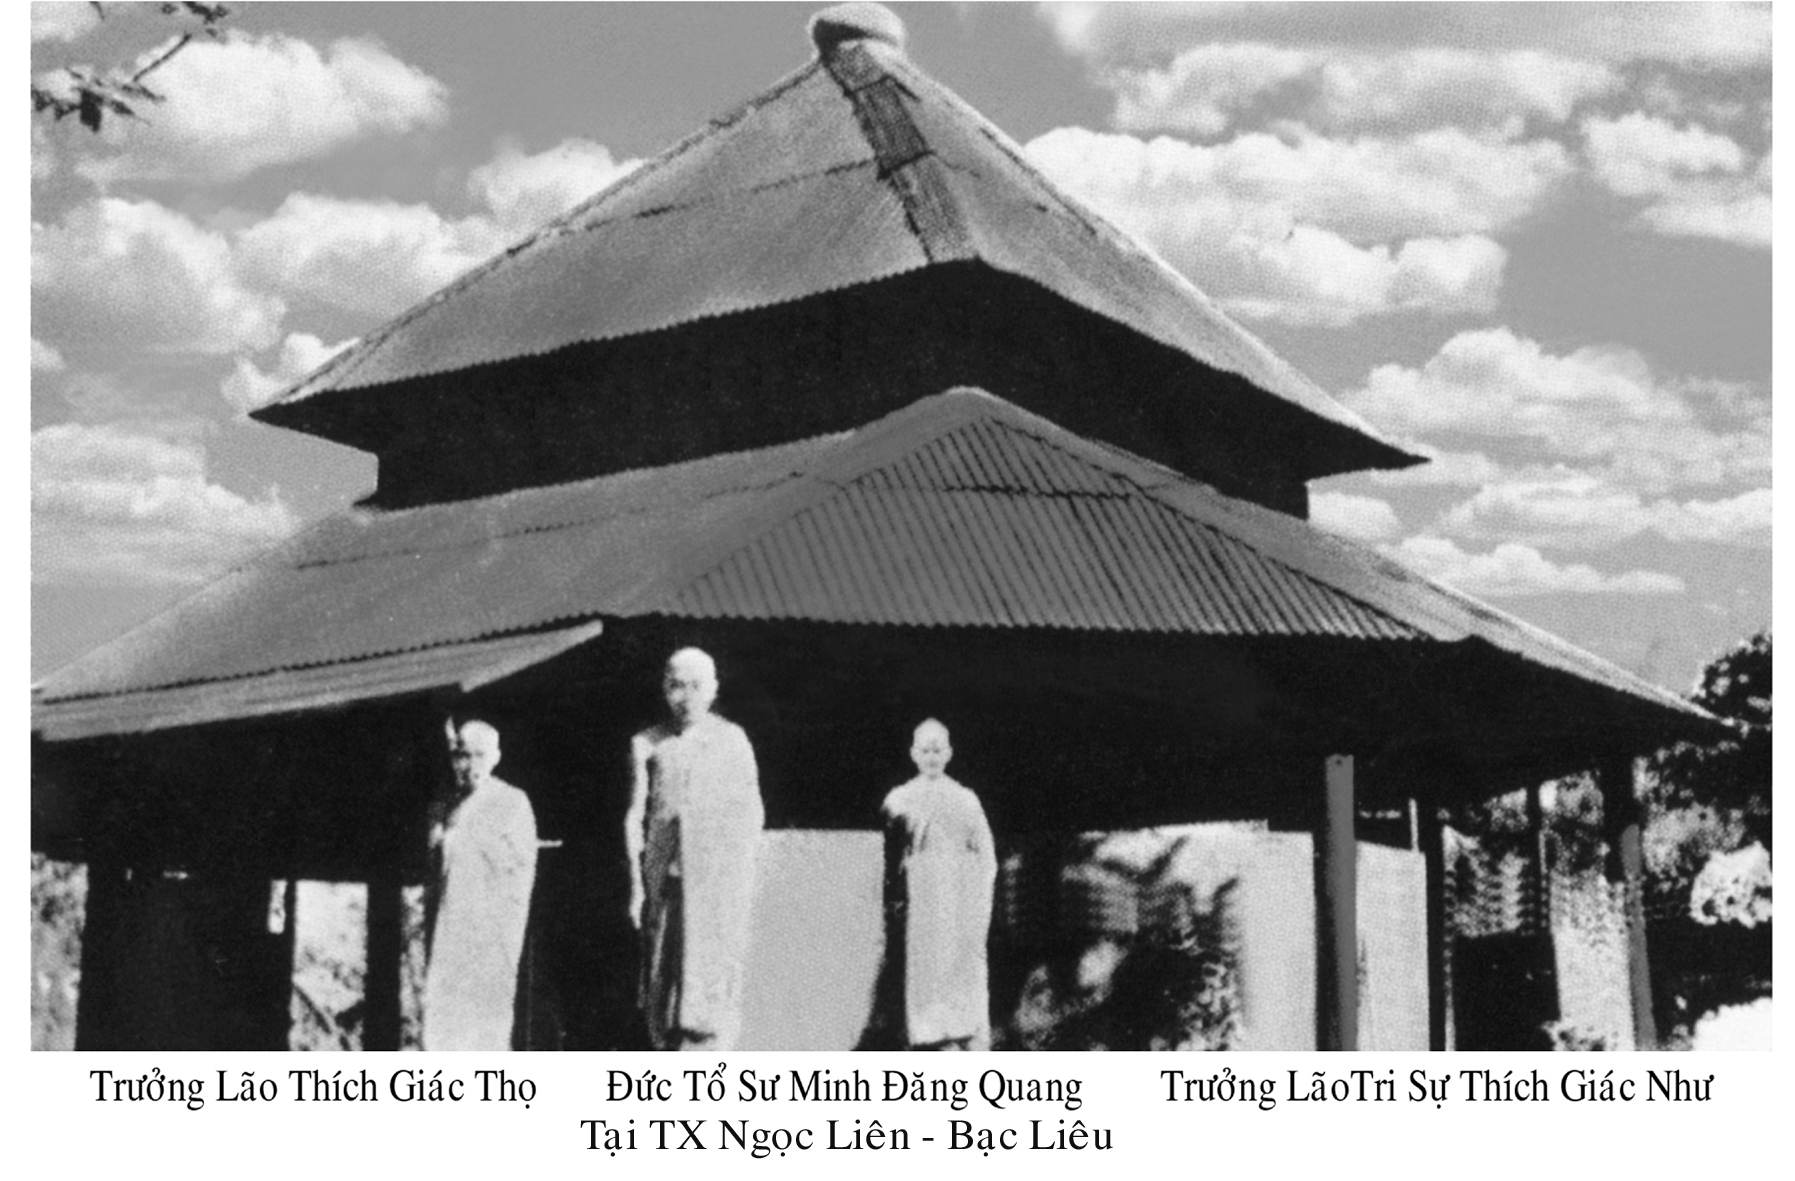 Buffalo Buddhist Temple Bodhisattva 14